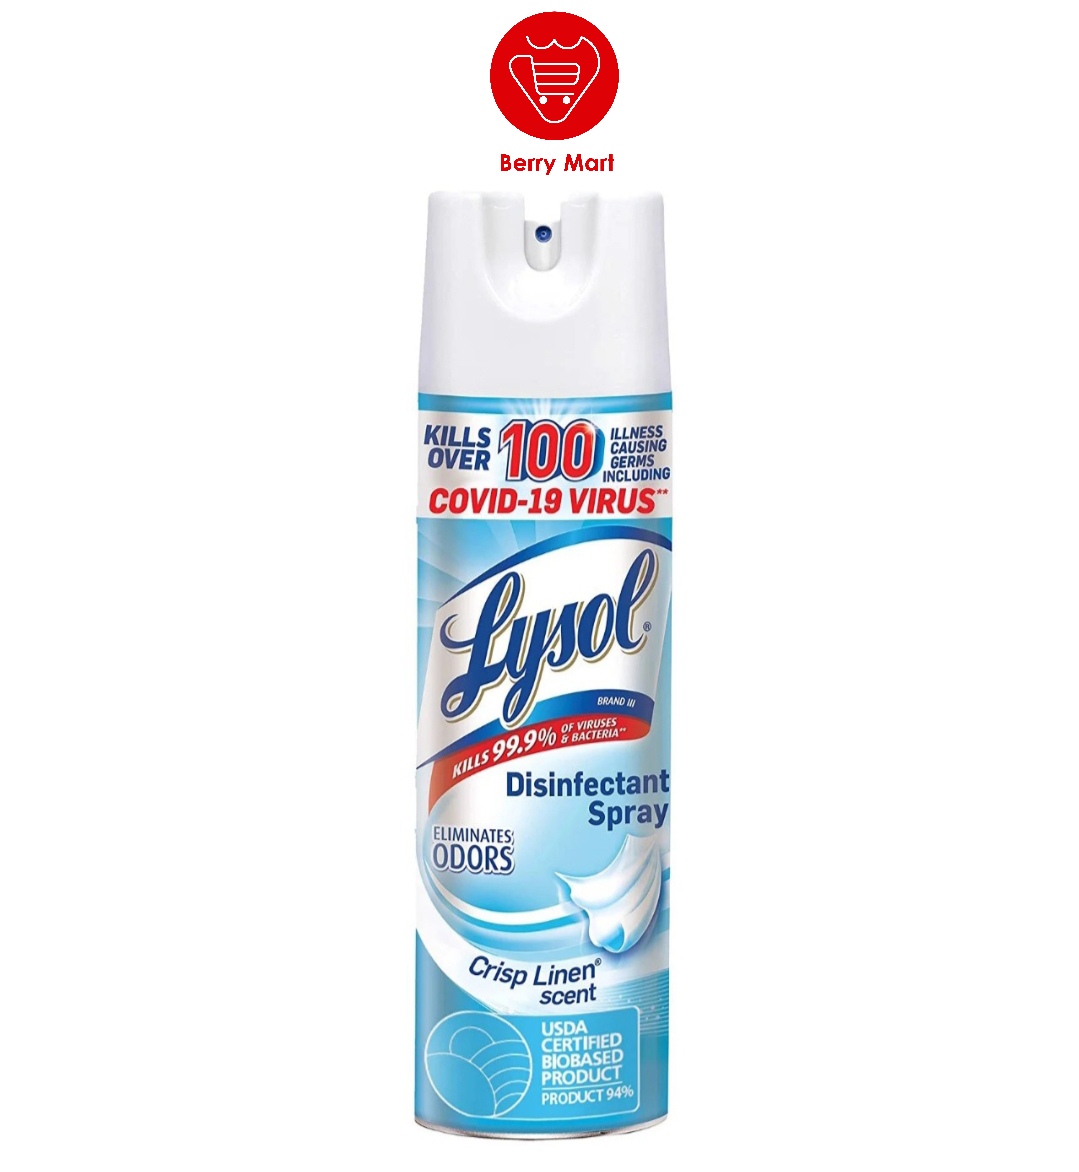 Xịt phòng diệt khuẩn Lysol Disinfectant Spray 538g của Mỹ | hiệu quả tiêu diệt virus vi khuẩn đến 999%. Hiệu quả diệt hơn 100 vi trùng gây bệnh | Berry Mart | BR235